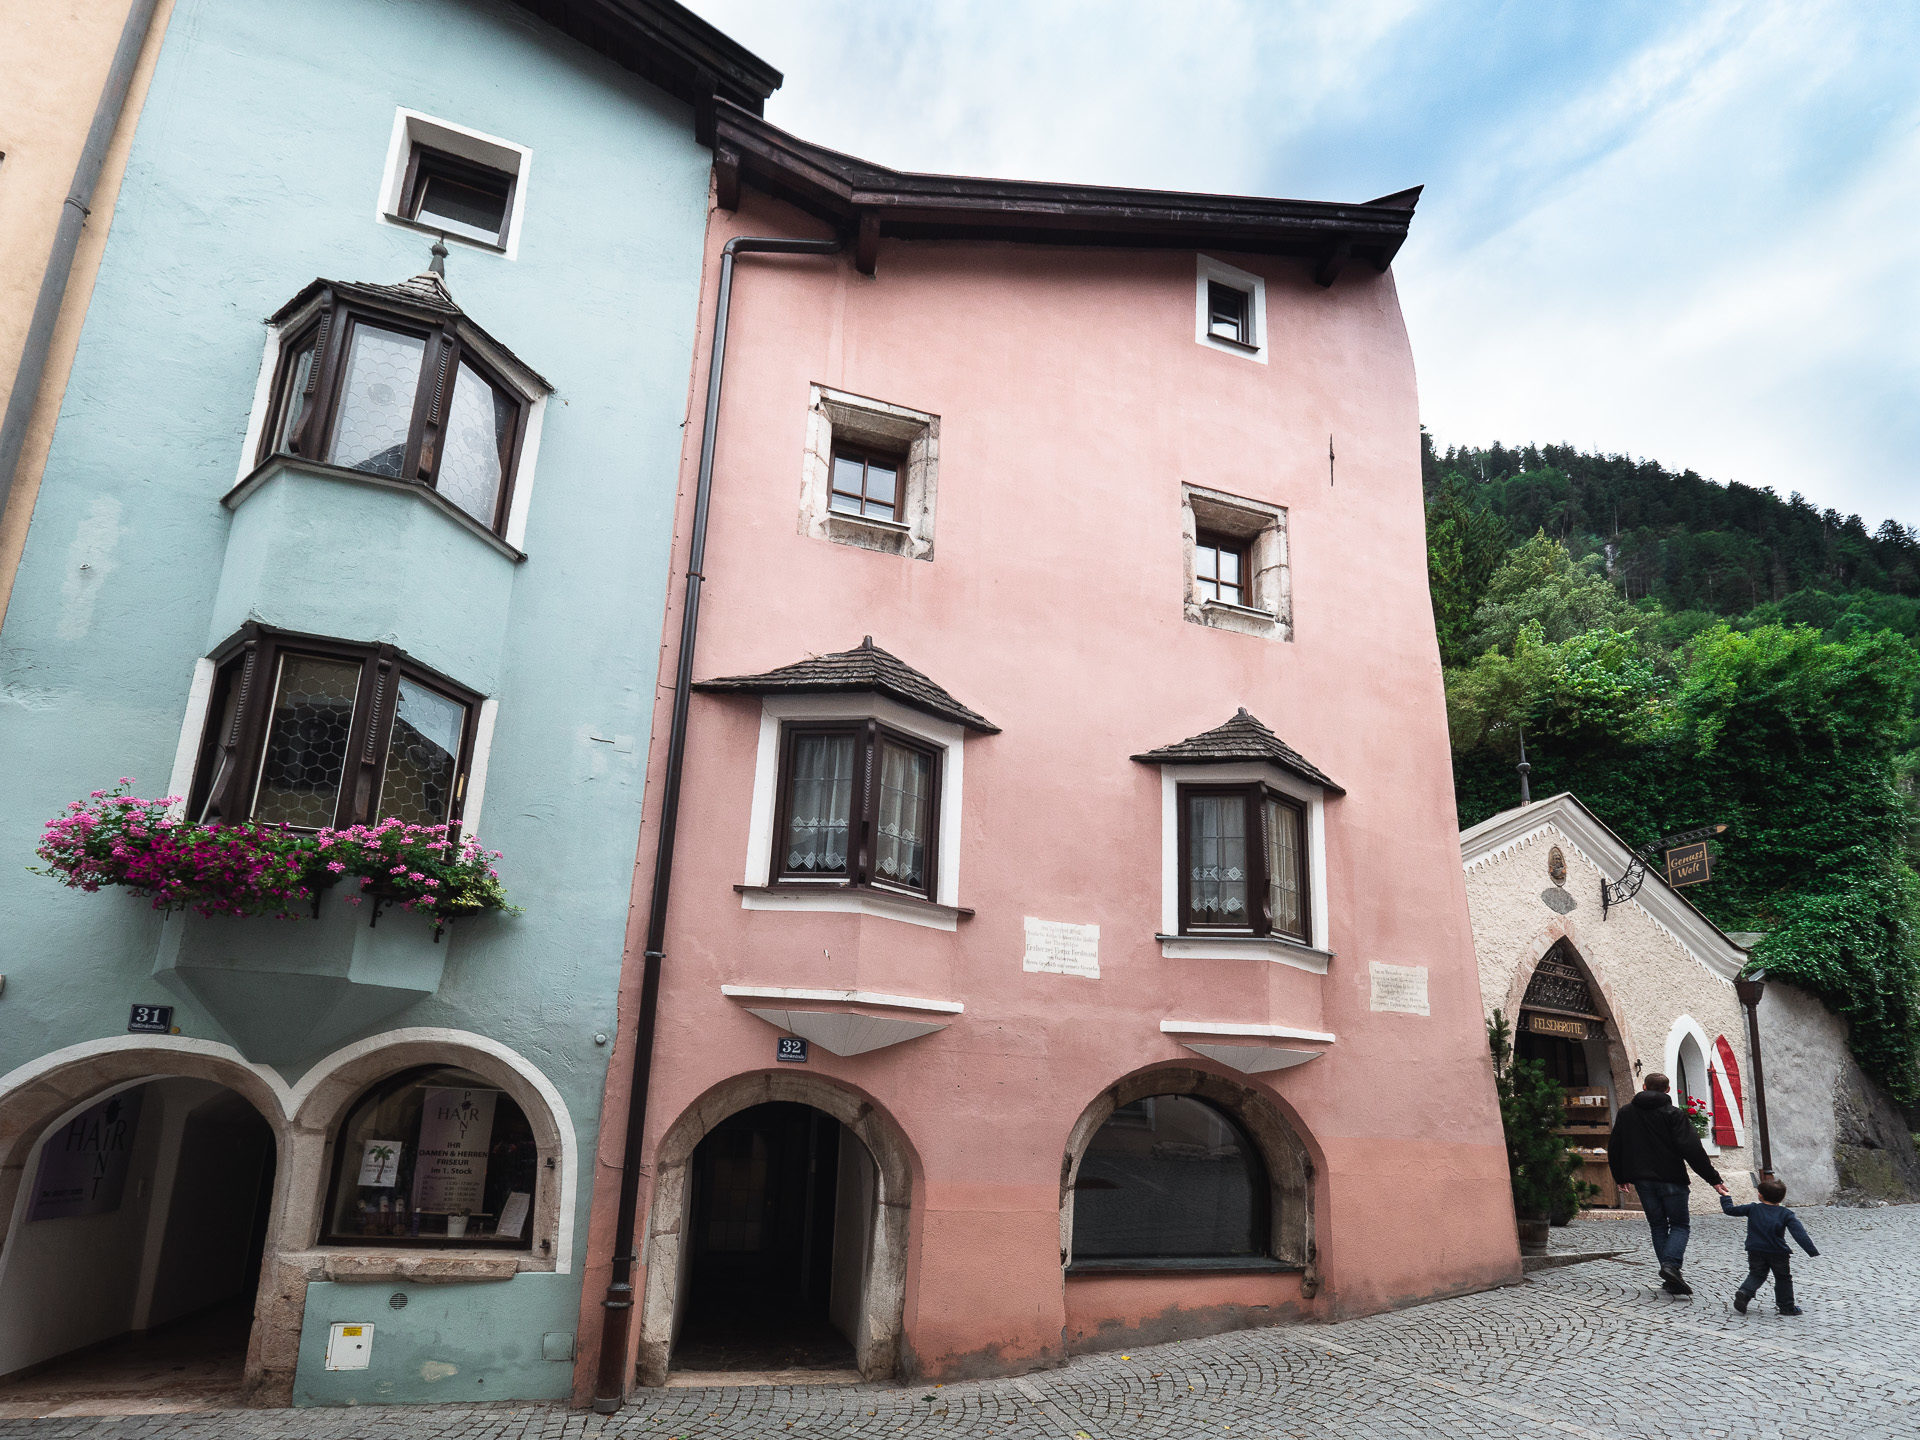 Façades colorées des maisons de Rattenberg en Alpbachtal Autriche